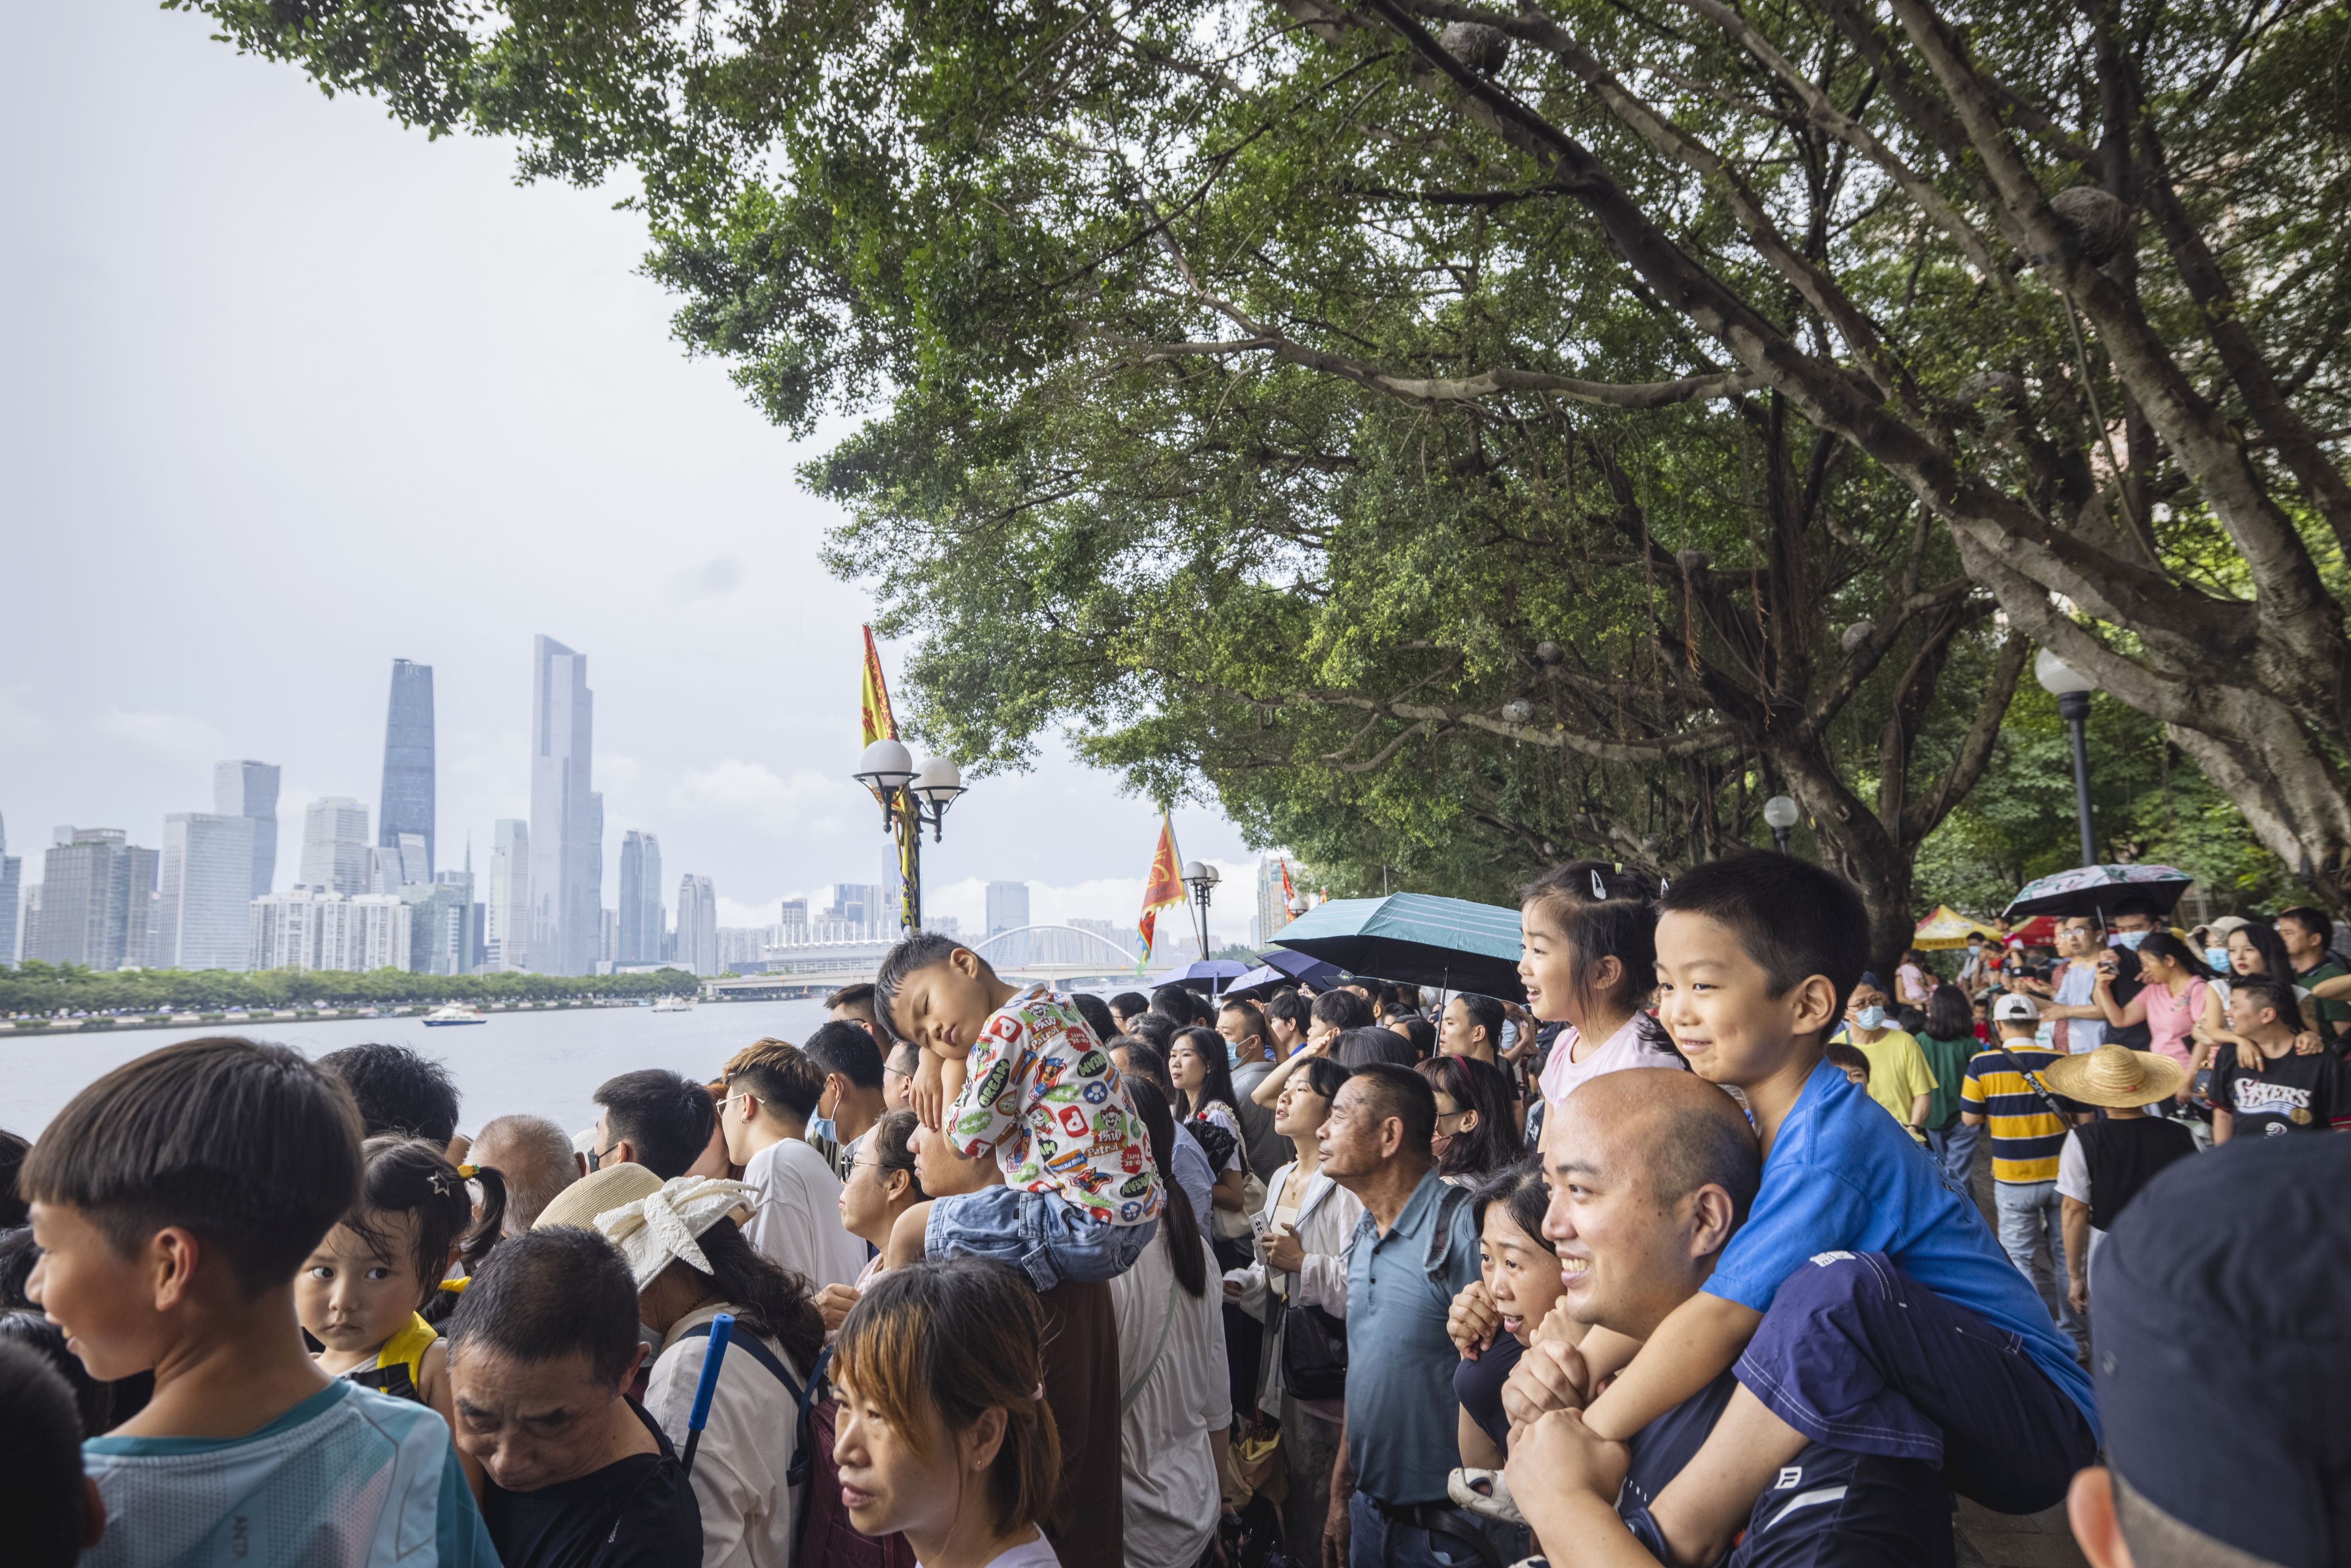 廣大市民游客駐足珠江兩岸觀賞龍舟賽。付海燕 攝